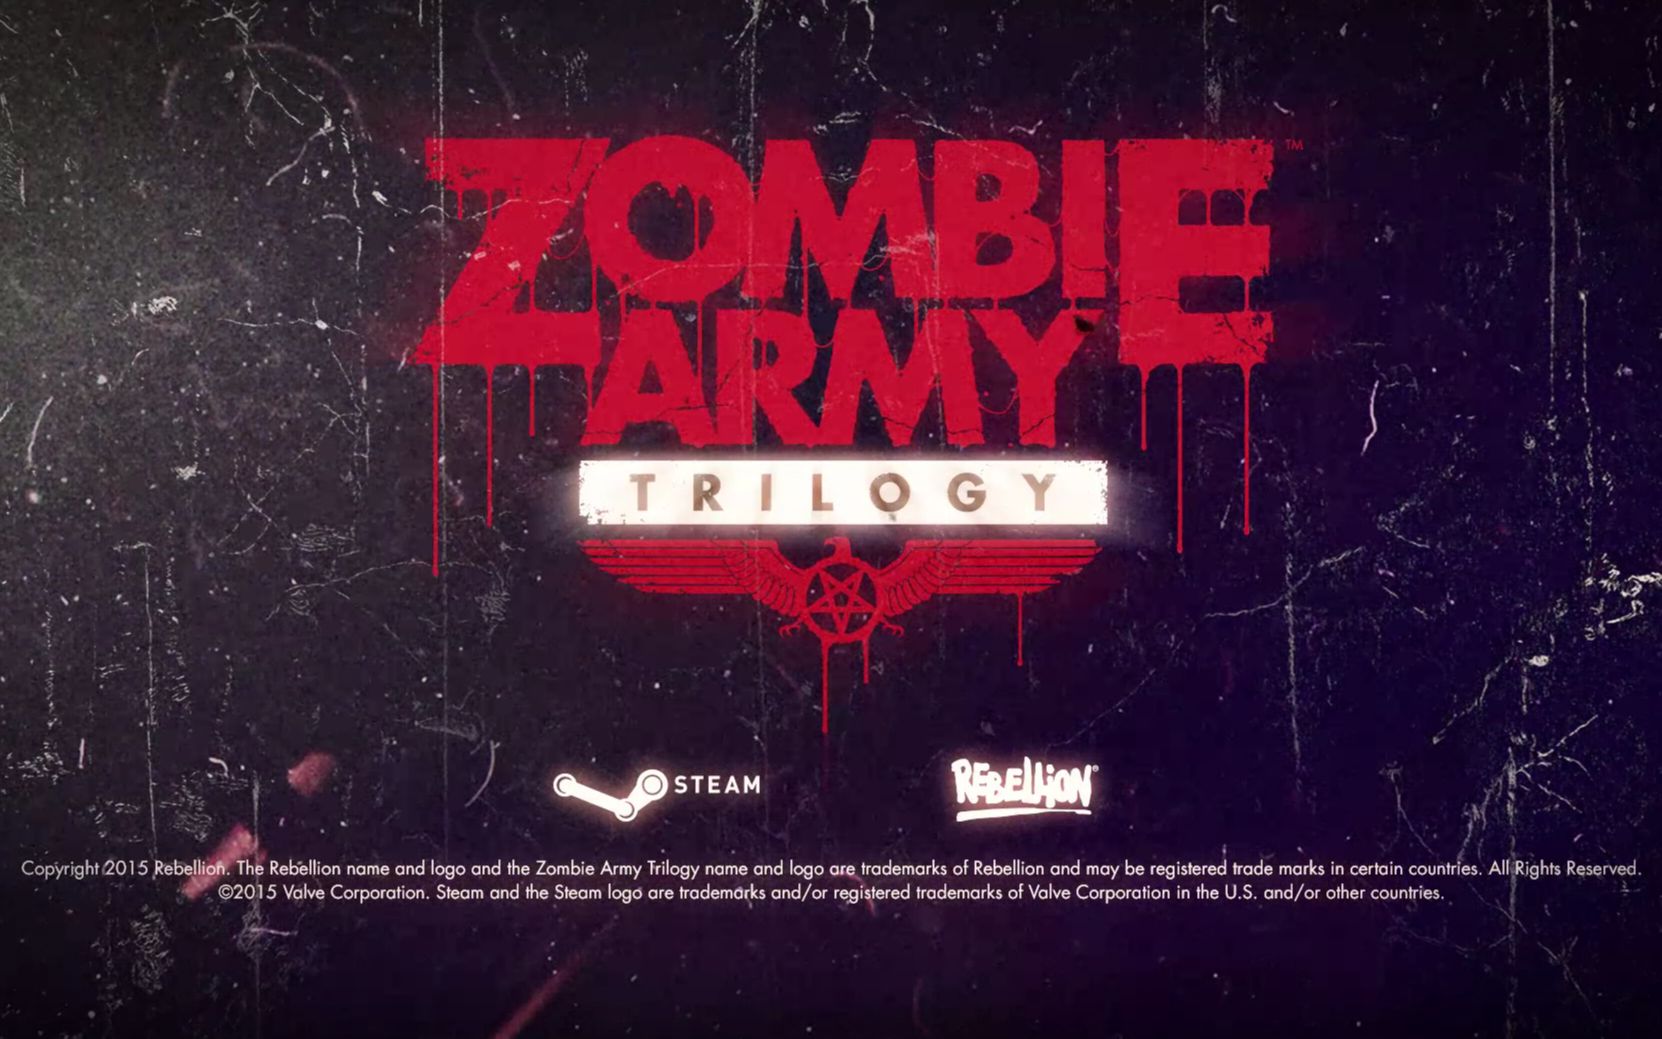 [图]僵尸部队三部曲（Zombie Army Trilogy） 单人对抗最高难度 极限敌军生成点 第一幕第五关 通往地狱的地铁